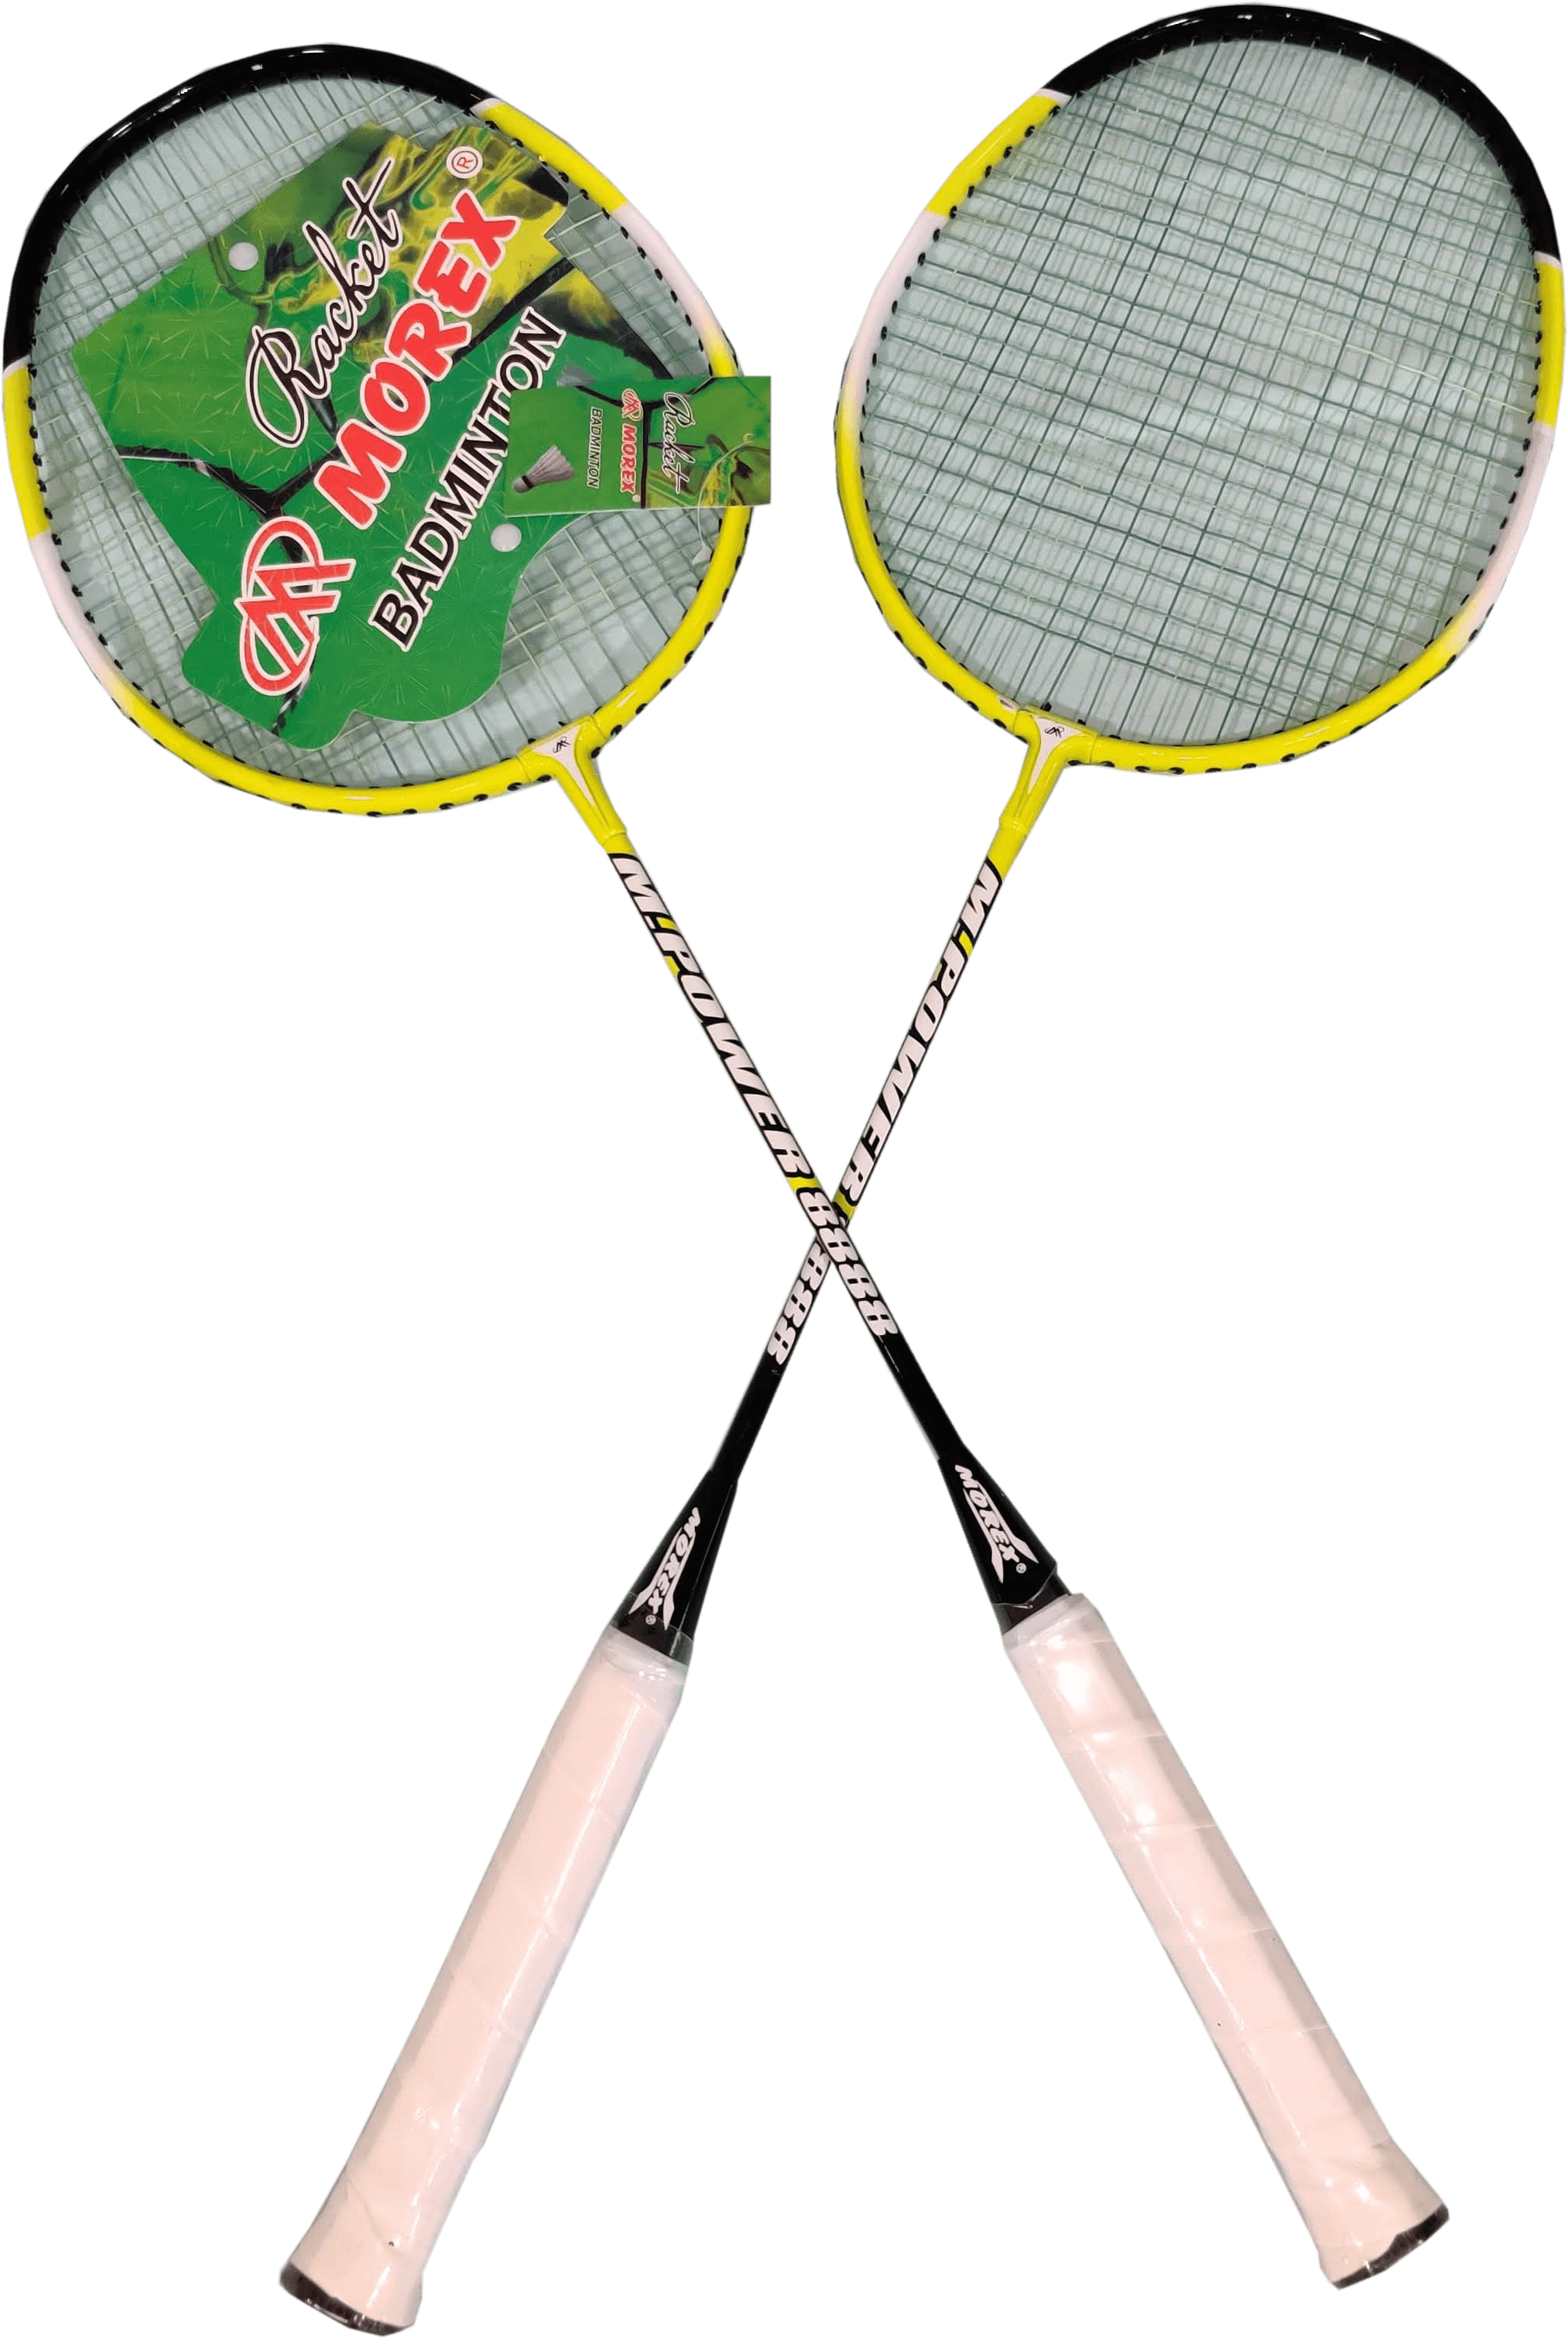 morex racket price